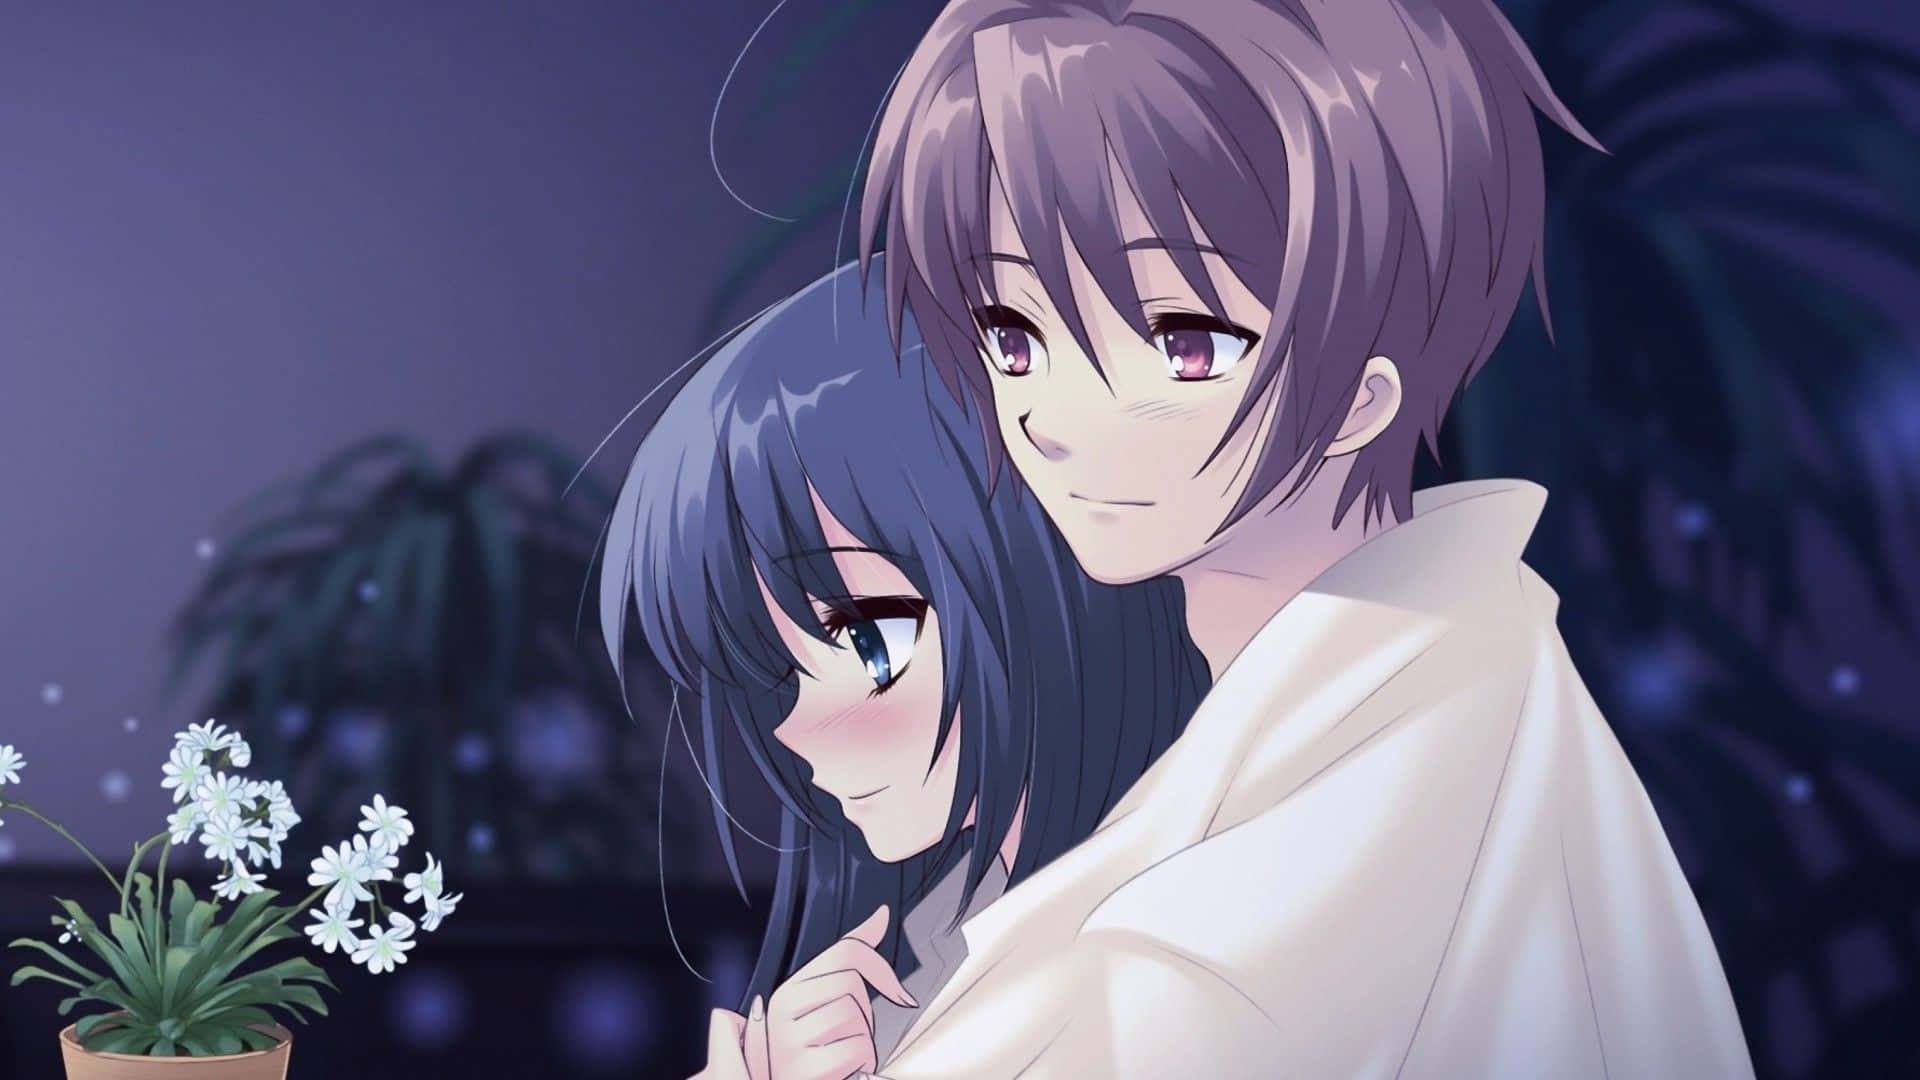 Dette japanske anime par har et romantisk øjeblik. Wallpaper